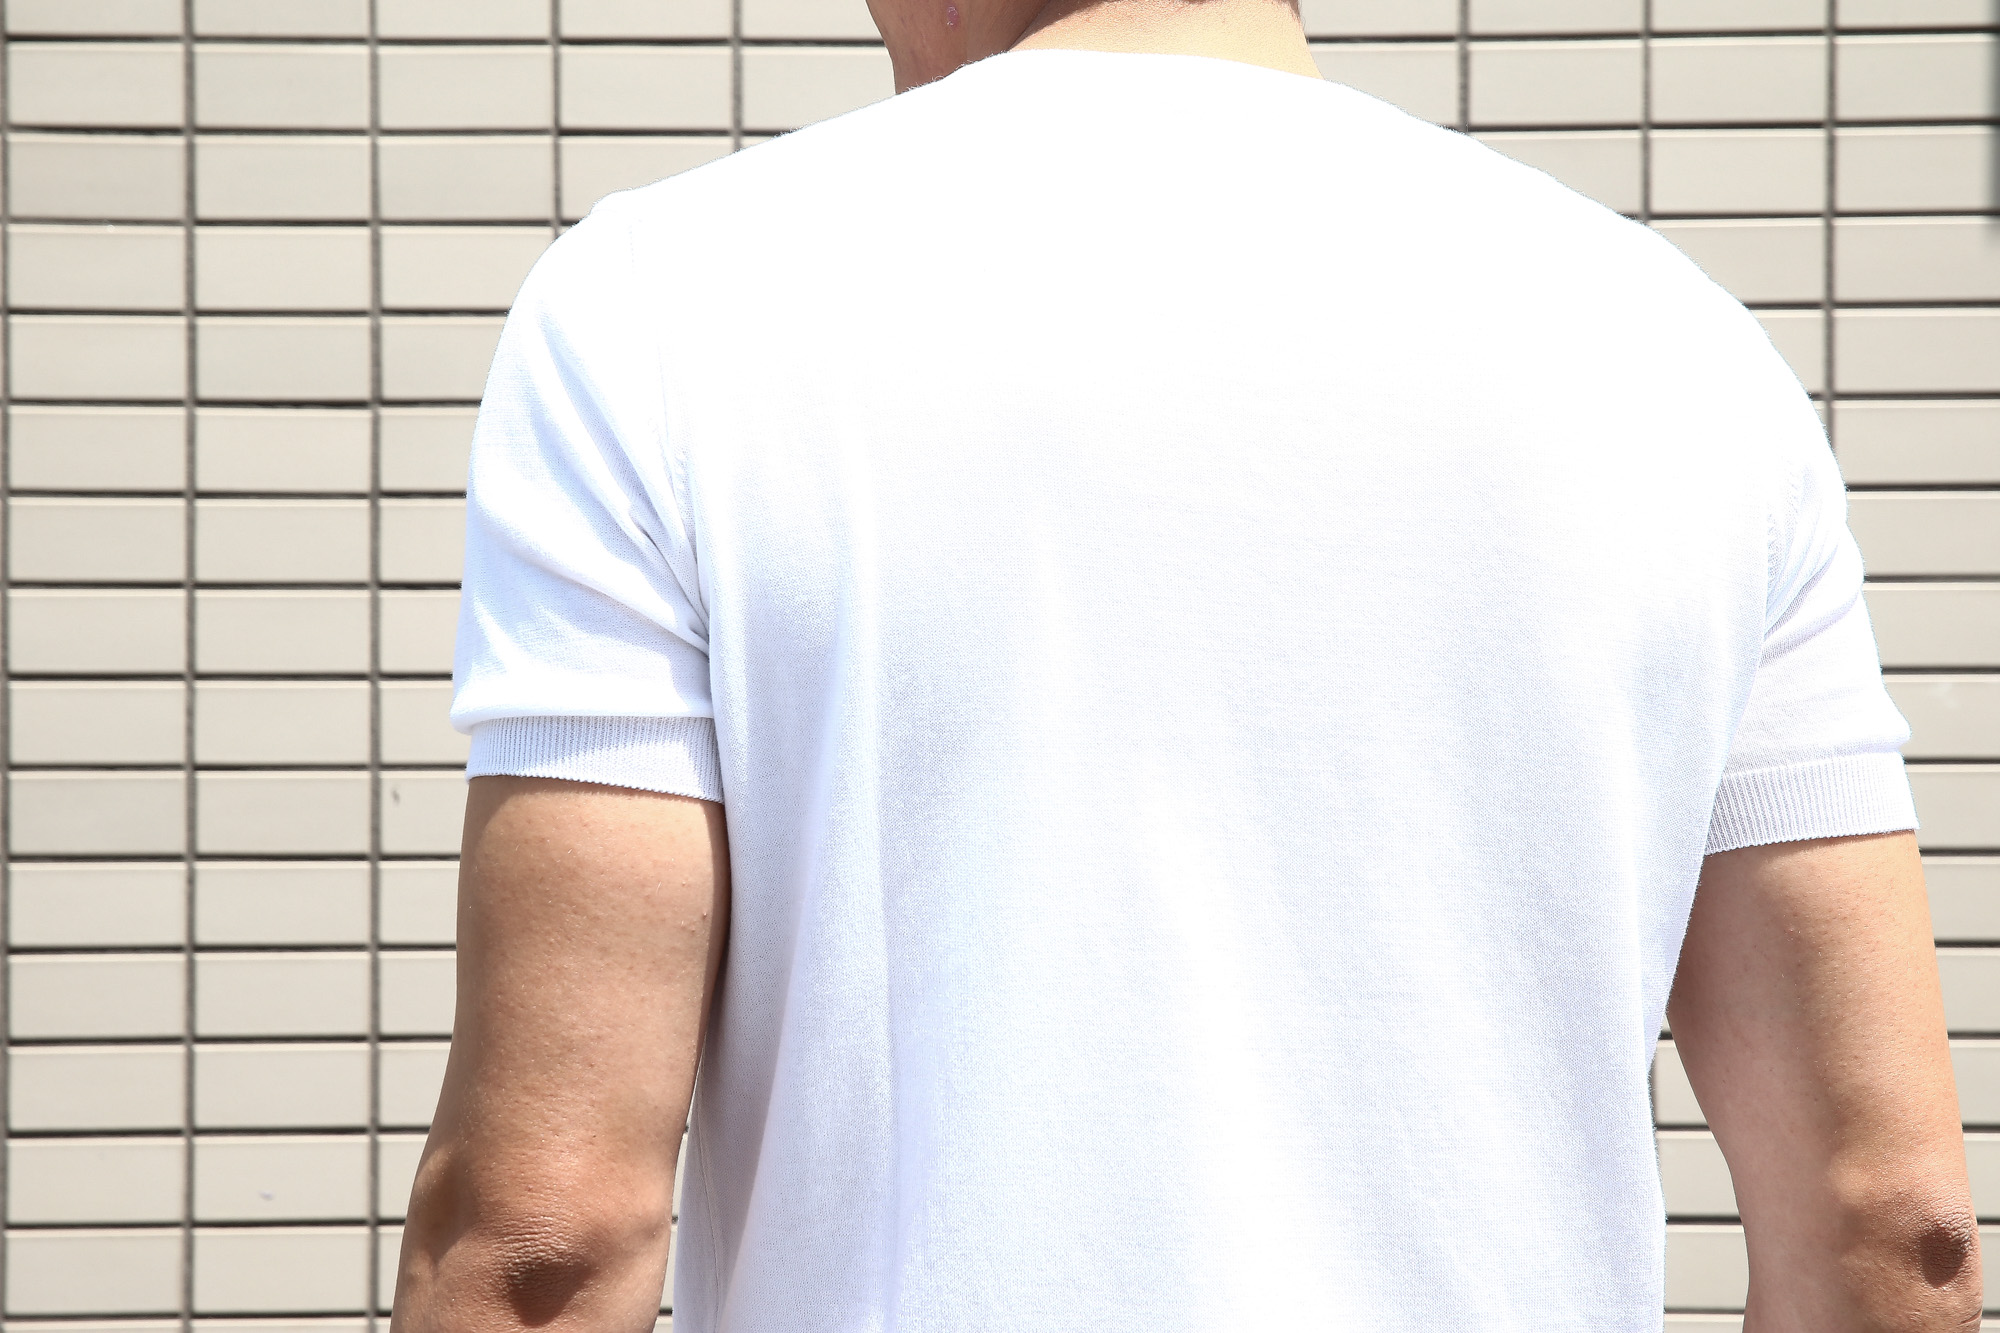 Gran Sasso (グランサッソ) Fresh Cotton T-shirt (フレッシュコットン Tシャツ) FRESH COTTON (フレッシュコットン) コットン ニット Tシャツ WHITE (ホワイト・002) made in italy (イタリア製) 2018 春夏新作 gransasso 愛知 名古屋 Alto e Diritto アルト エ デリット ニットTee